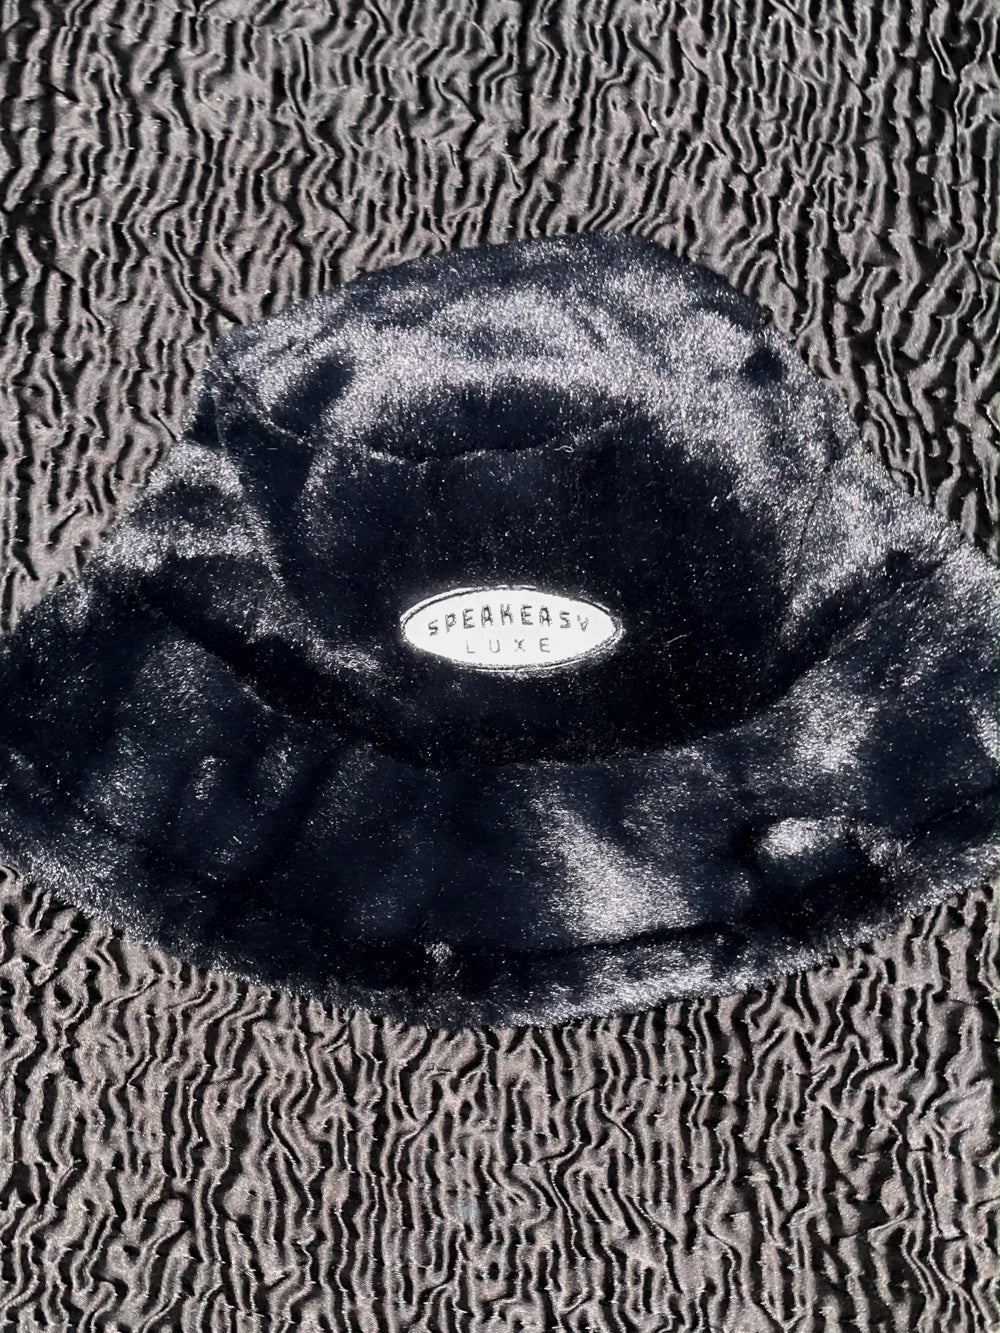 Faux Fur Fuzzy Bucket Hat - Black